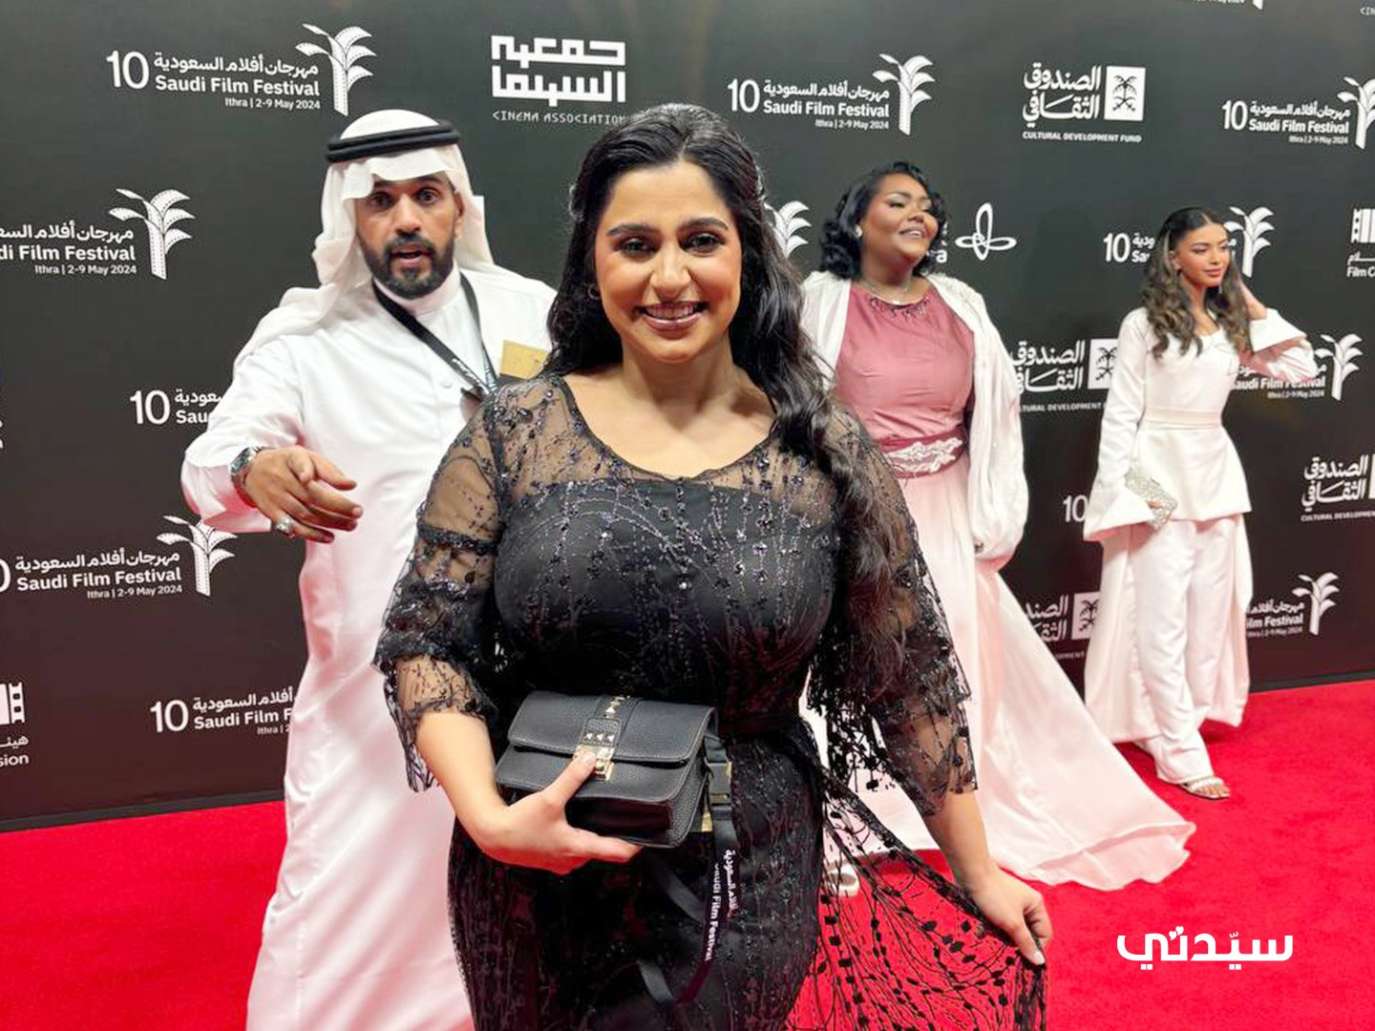 دانة آل سالم من مهرجان أفلام السعودية: انتهيت من كتابة فيلمي الروائي الأول.. فيديو خاص لـ 